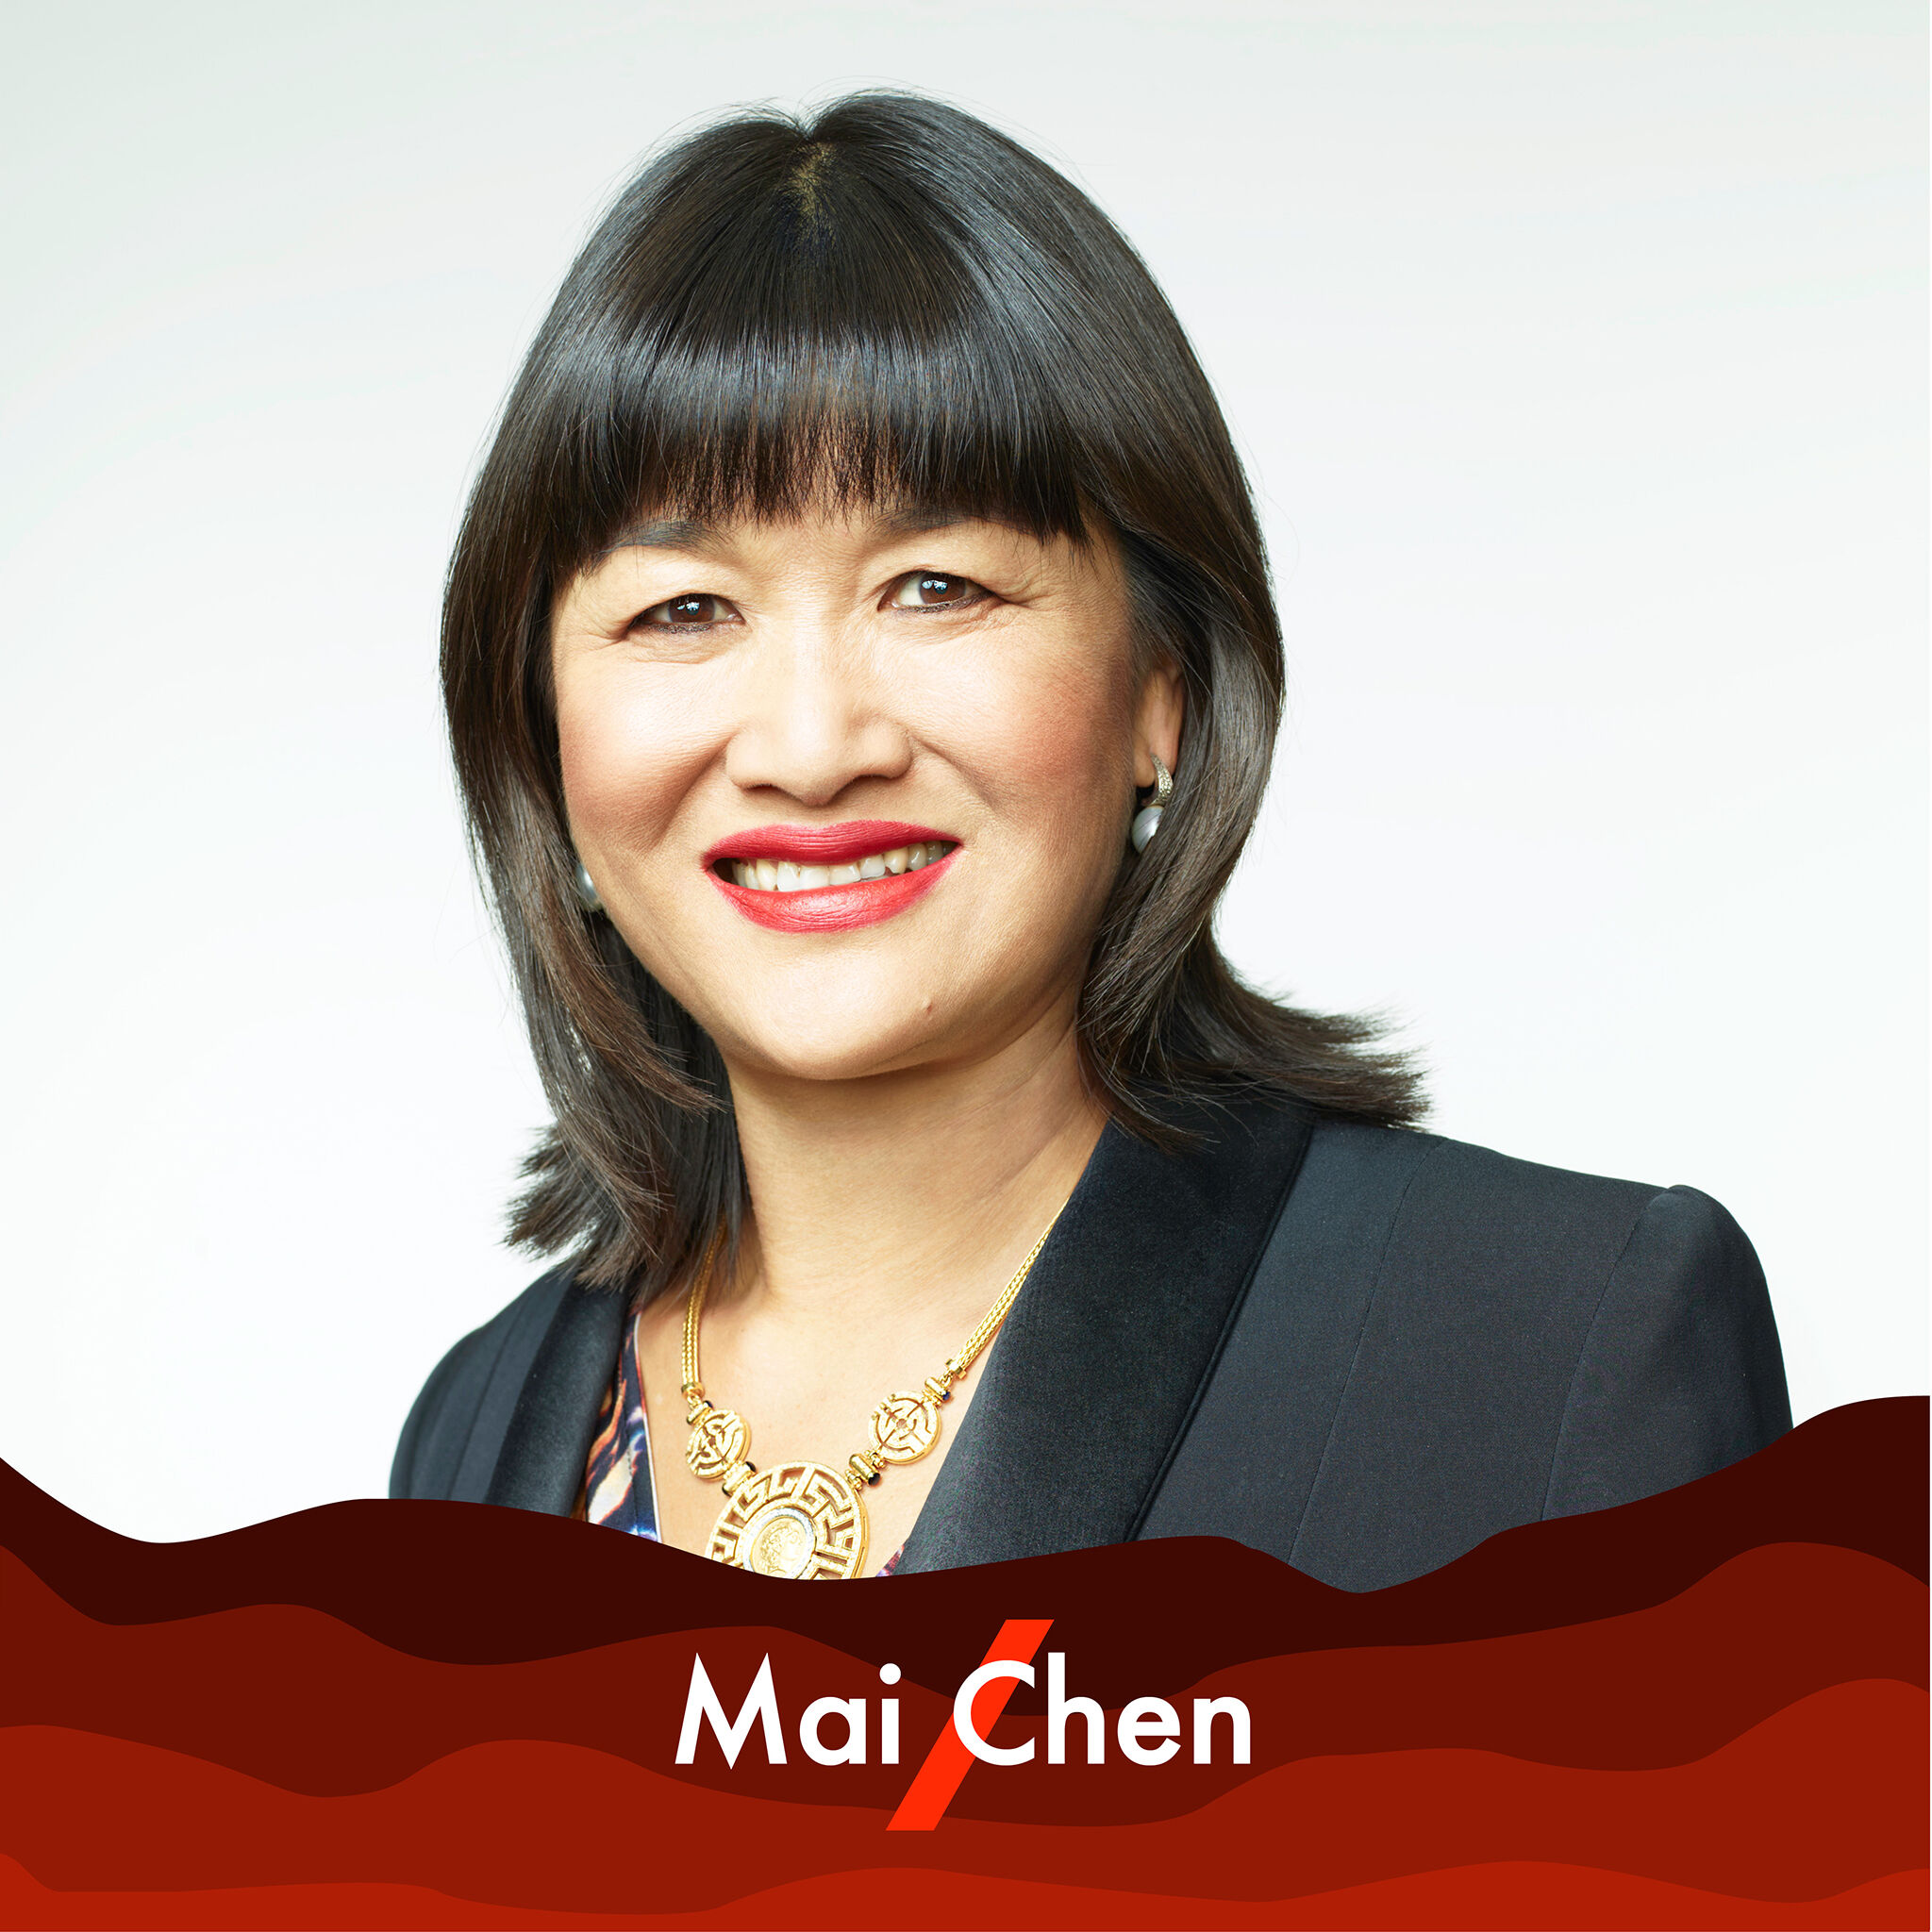 A picture of Mai Chen